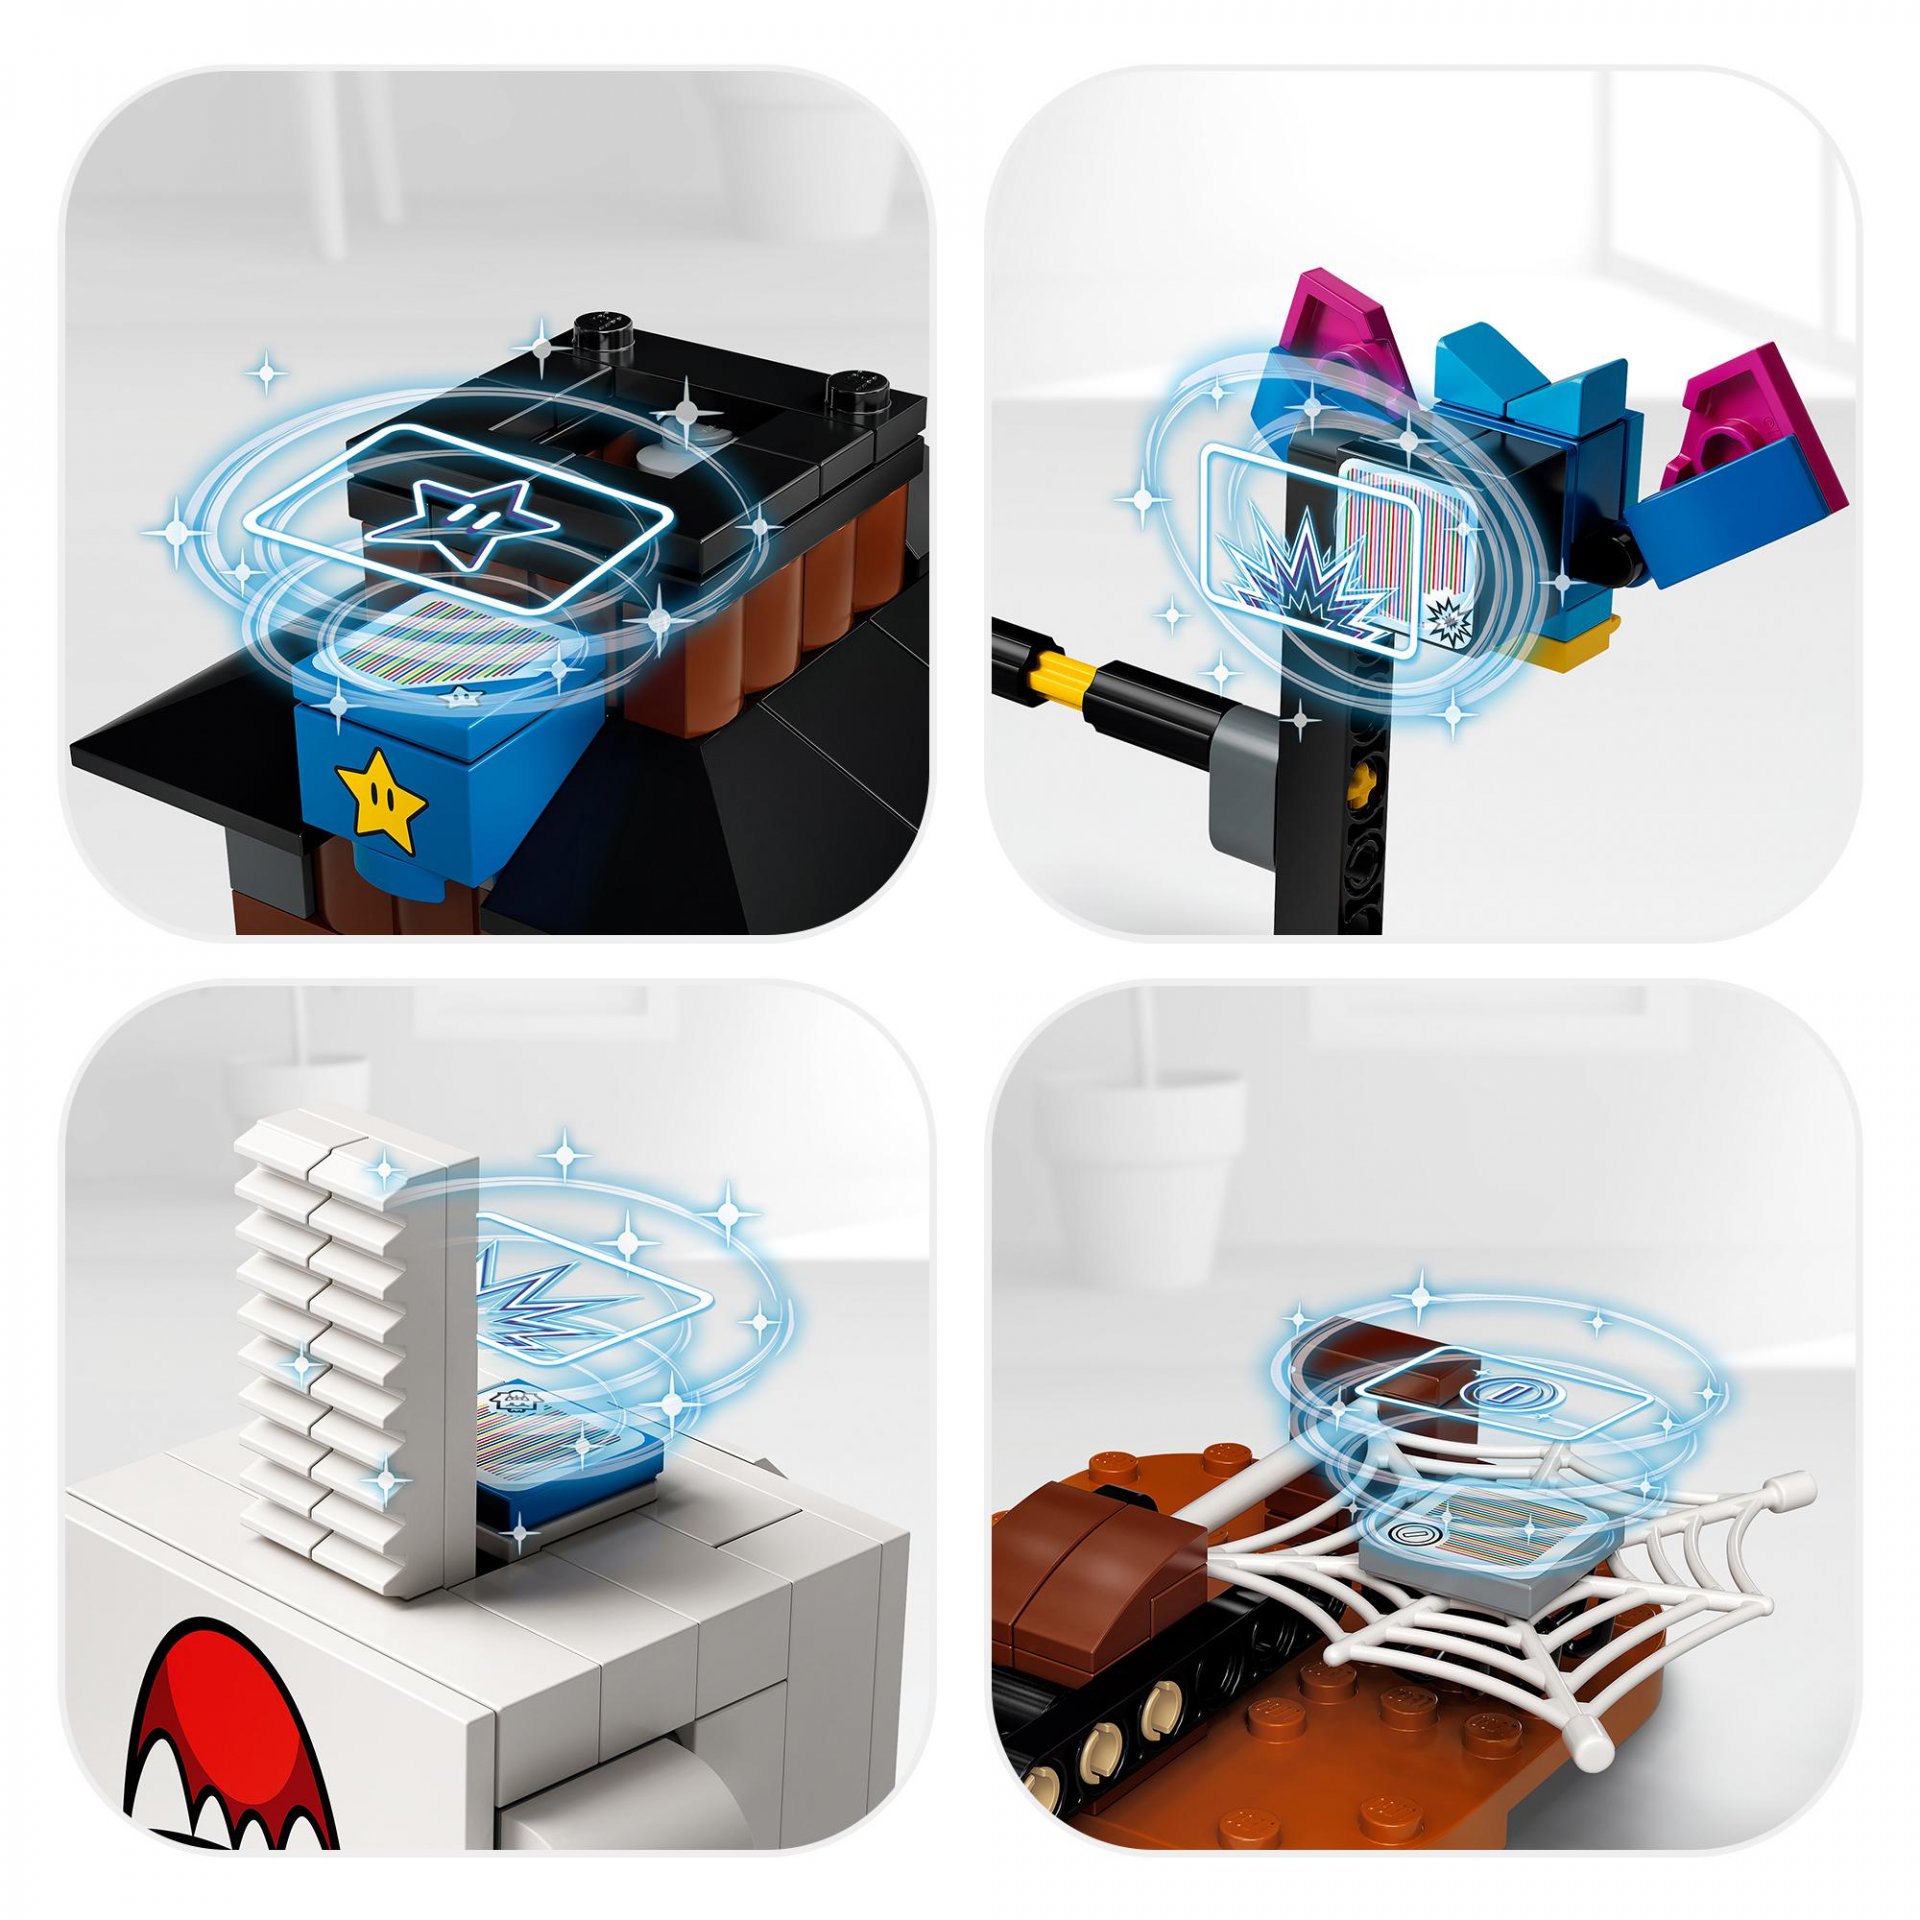 Kit di costruzione Re Boo e il cortile infestato - Pack di Espansione LEGO Super 71377, , large